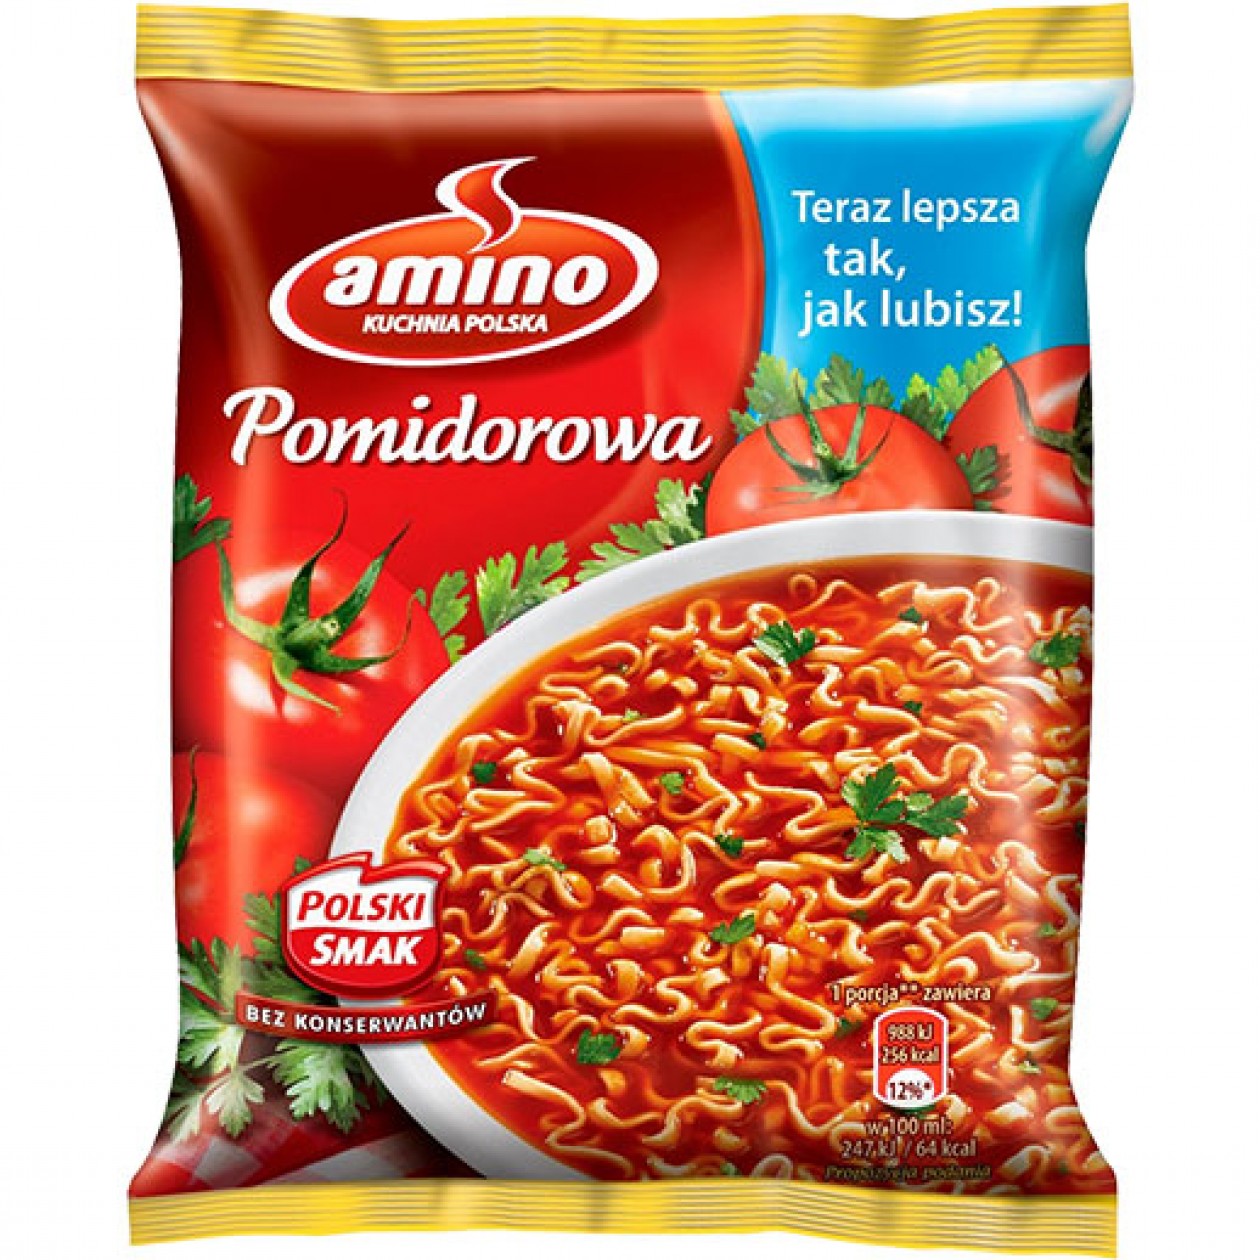 Amino Tomato Soup (Pomidorowa) 22x61g